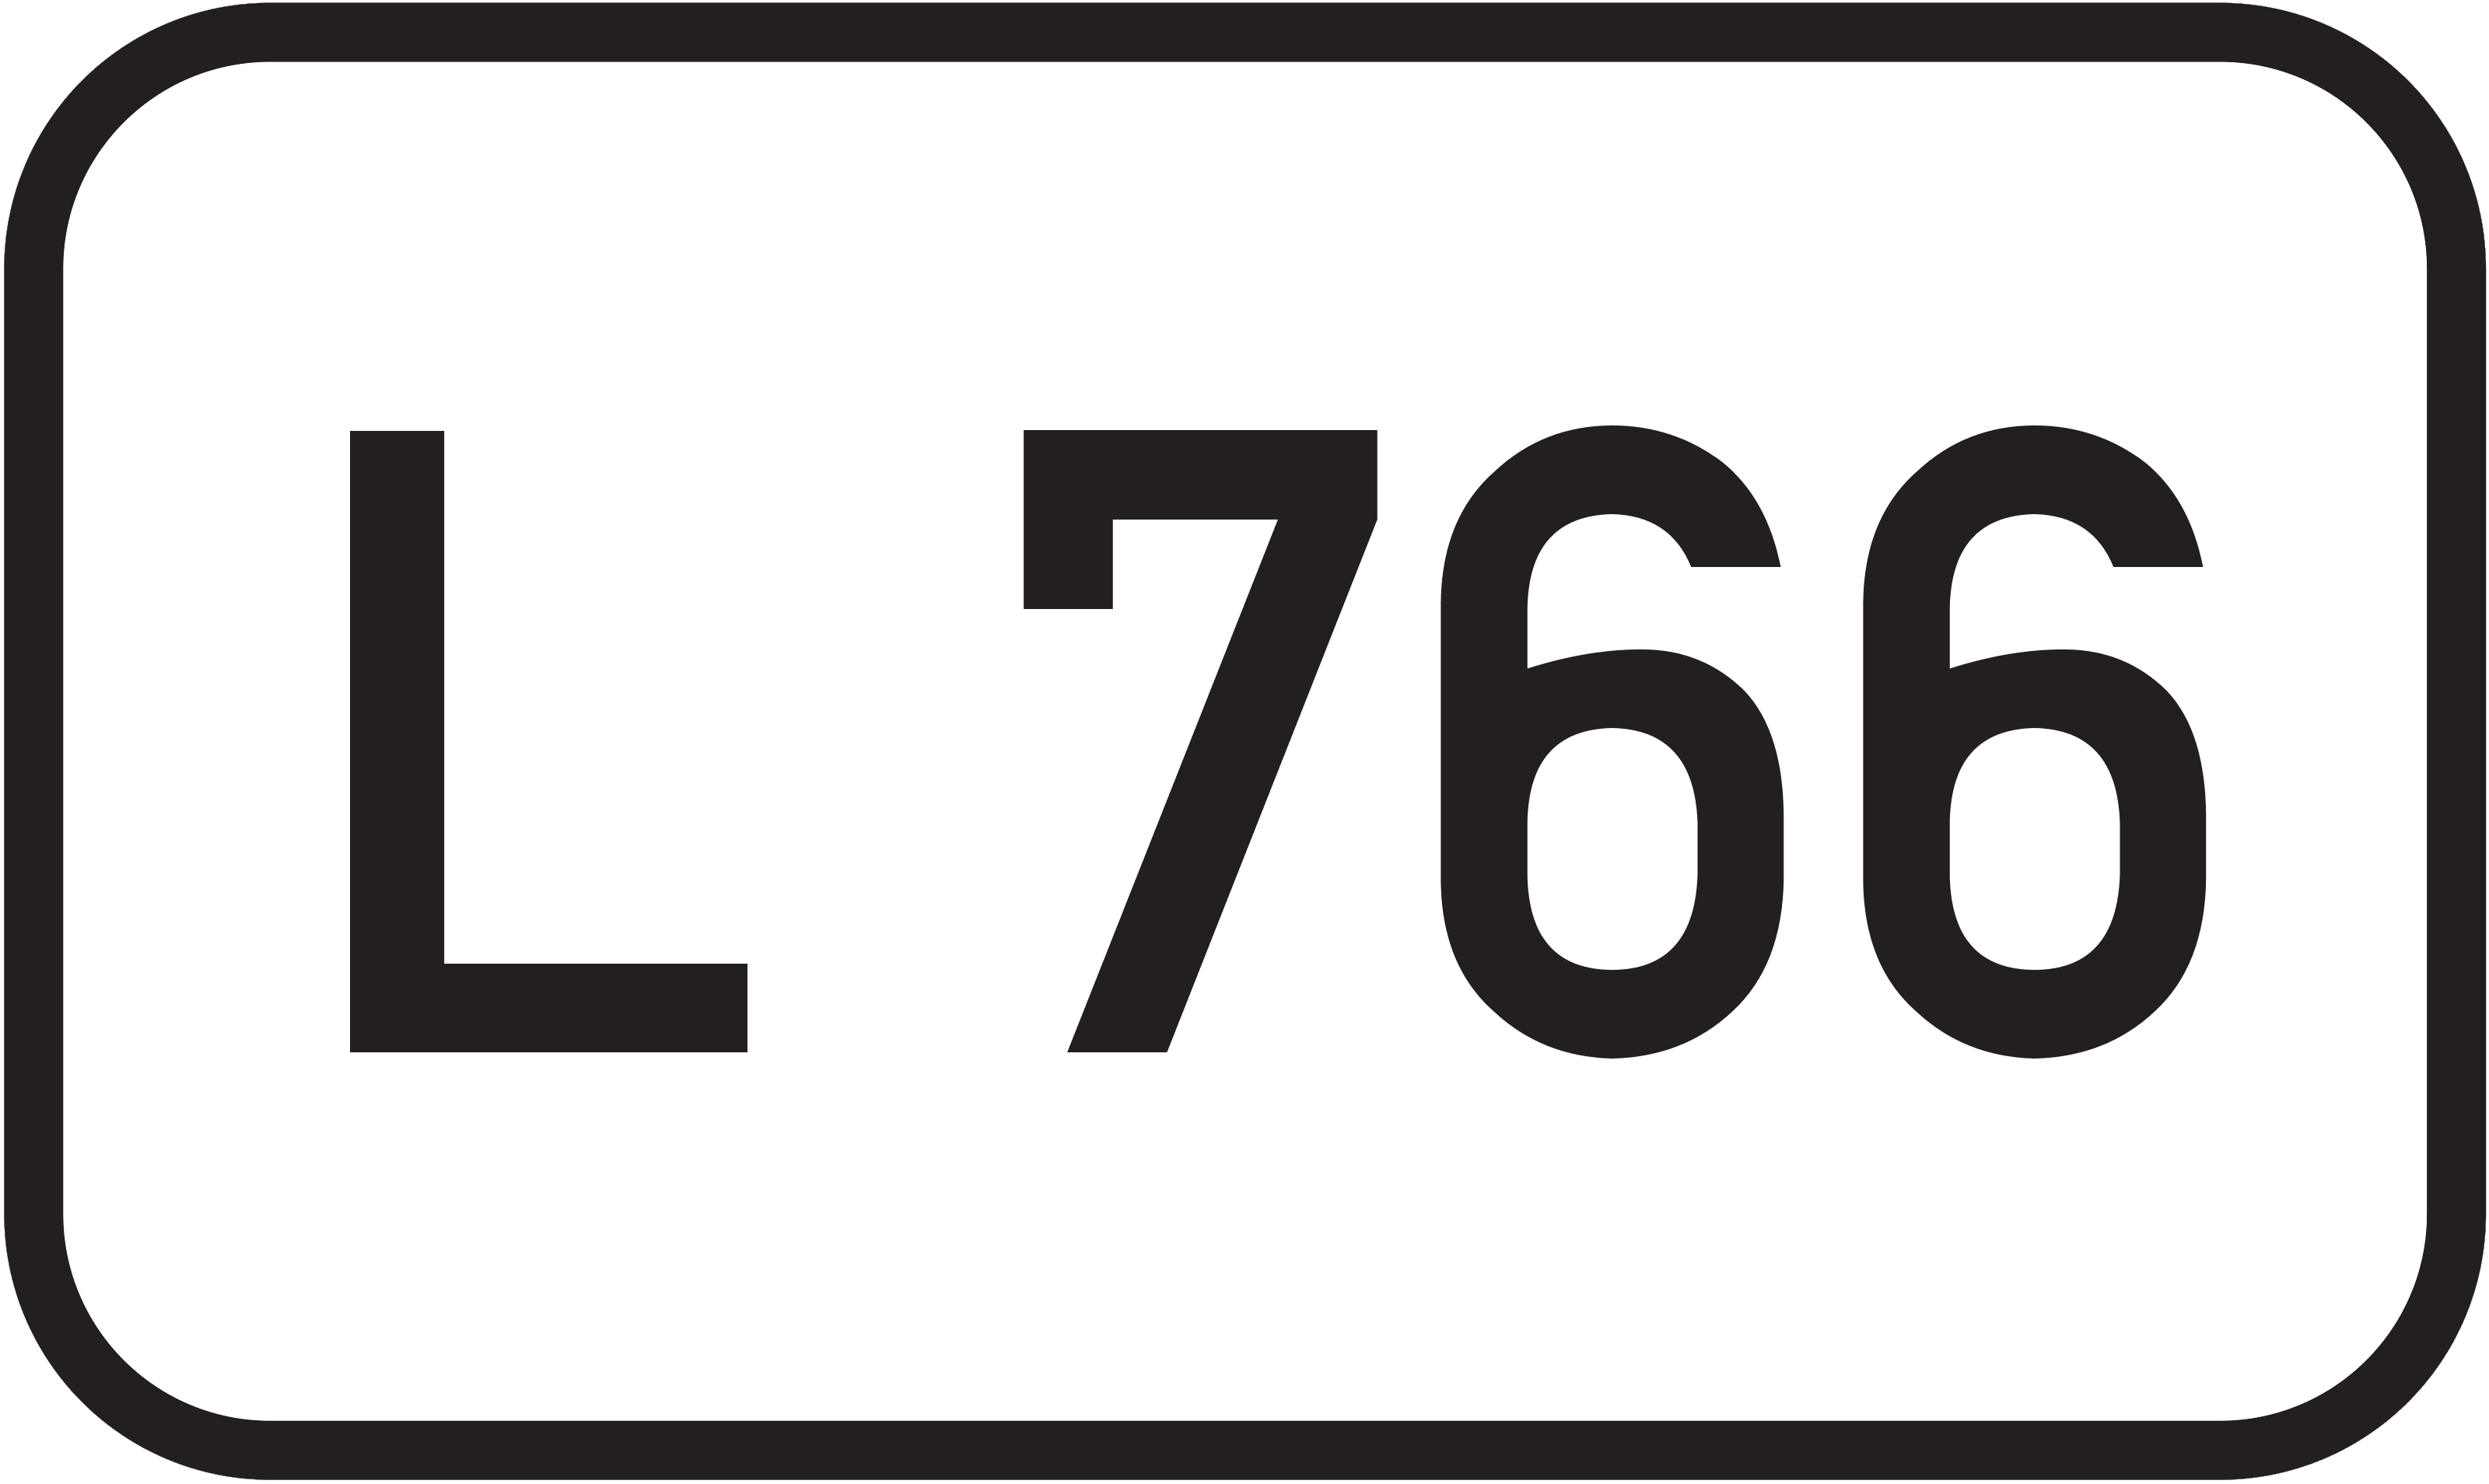 Landesstraße L 766